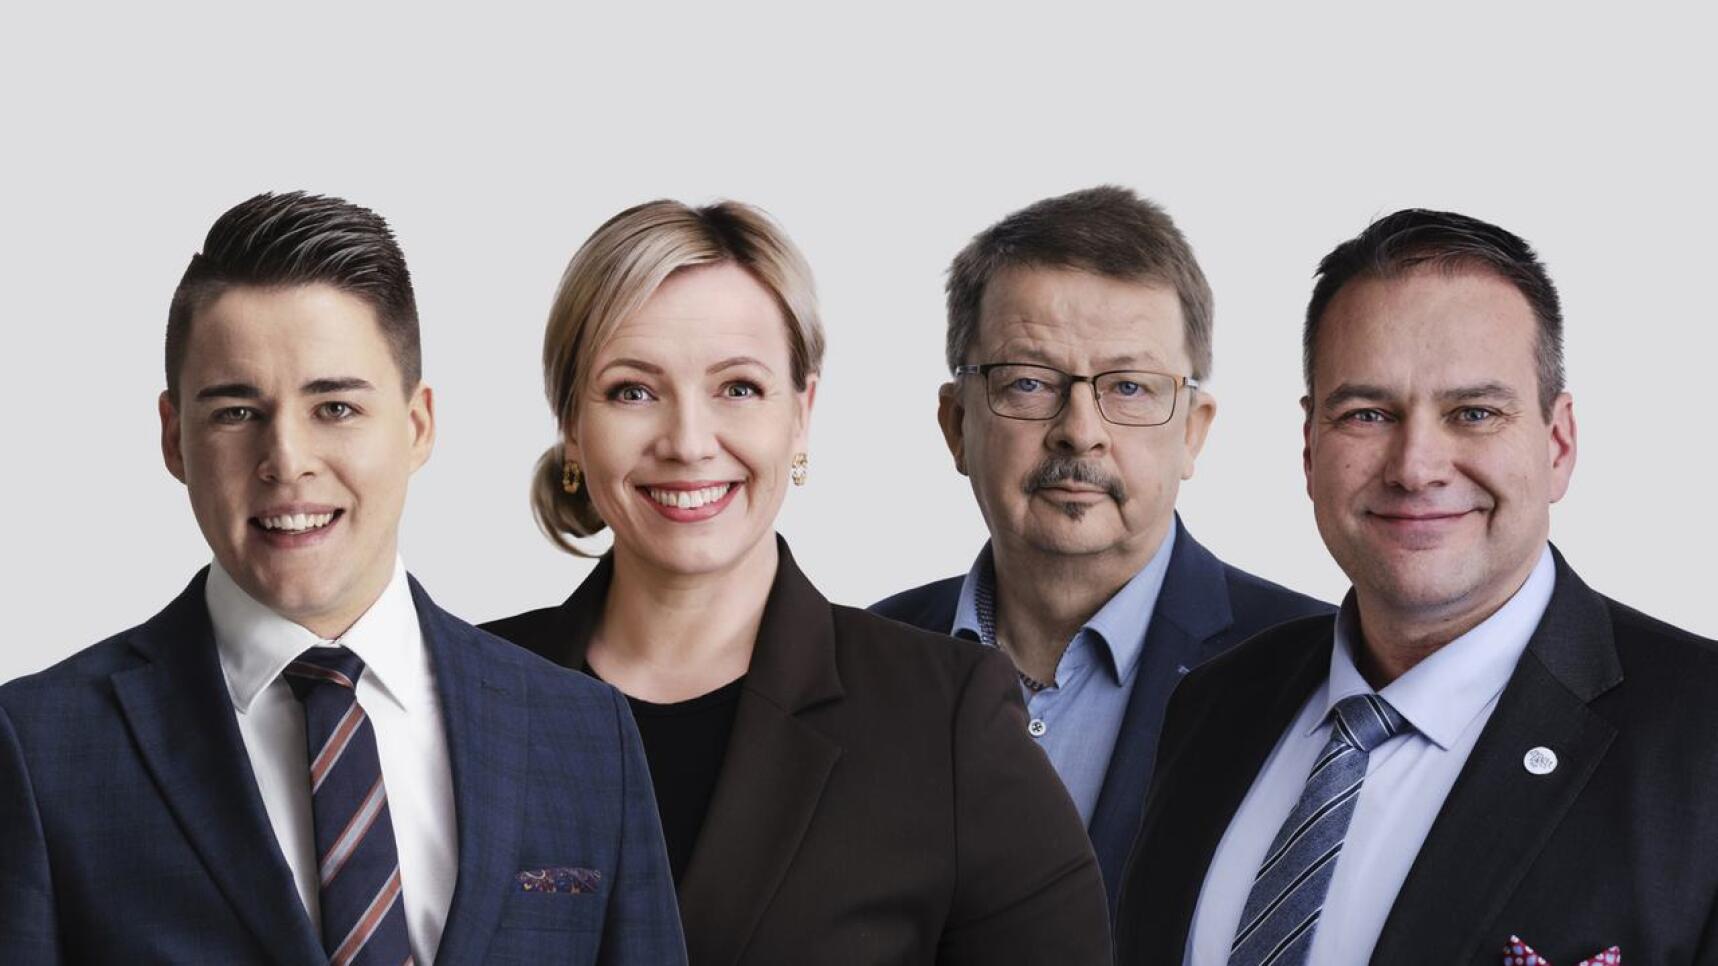 Pohjanmaan RKP täydensi ehdokaslistansa neljällä uudella nimellä, jotka ovat Christoffer Ingo, Johanna Holmäng, Rainer Bystedt ja Steven Frostdahl.